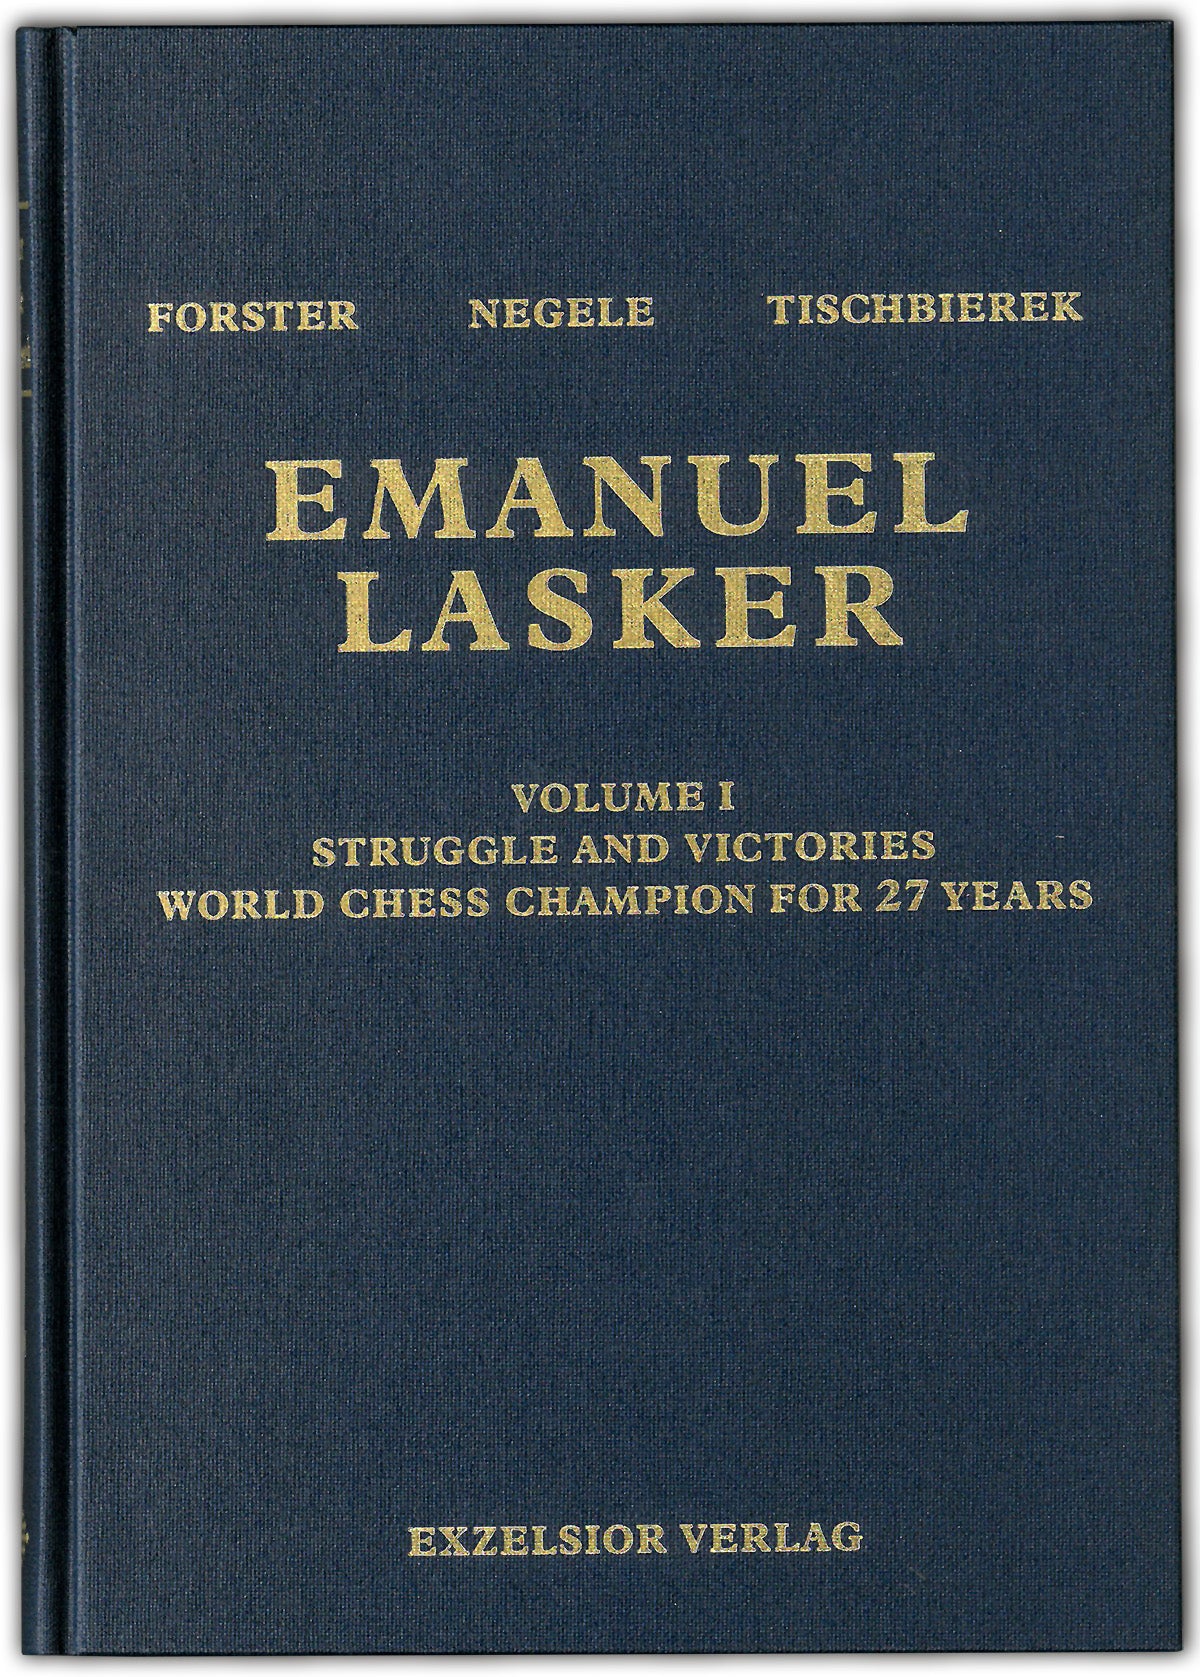 Tischbierek/Forster/Negele: Emanuel Lasker - Band 1